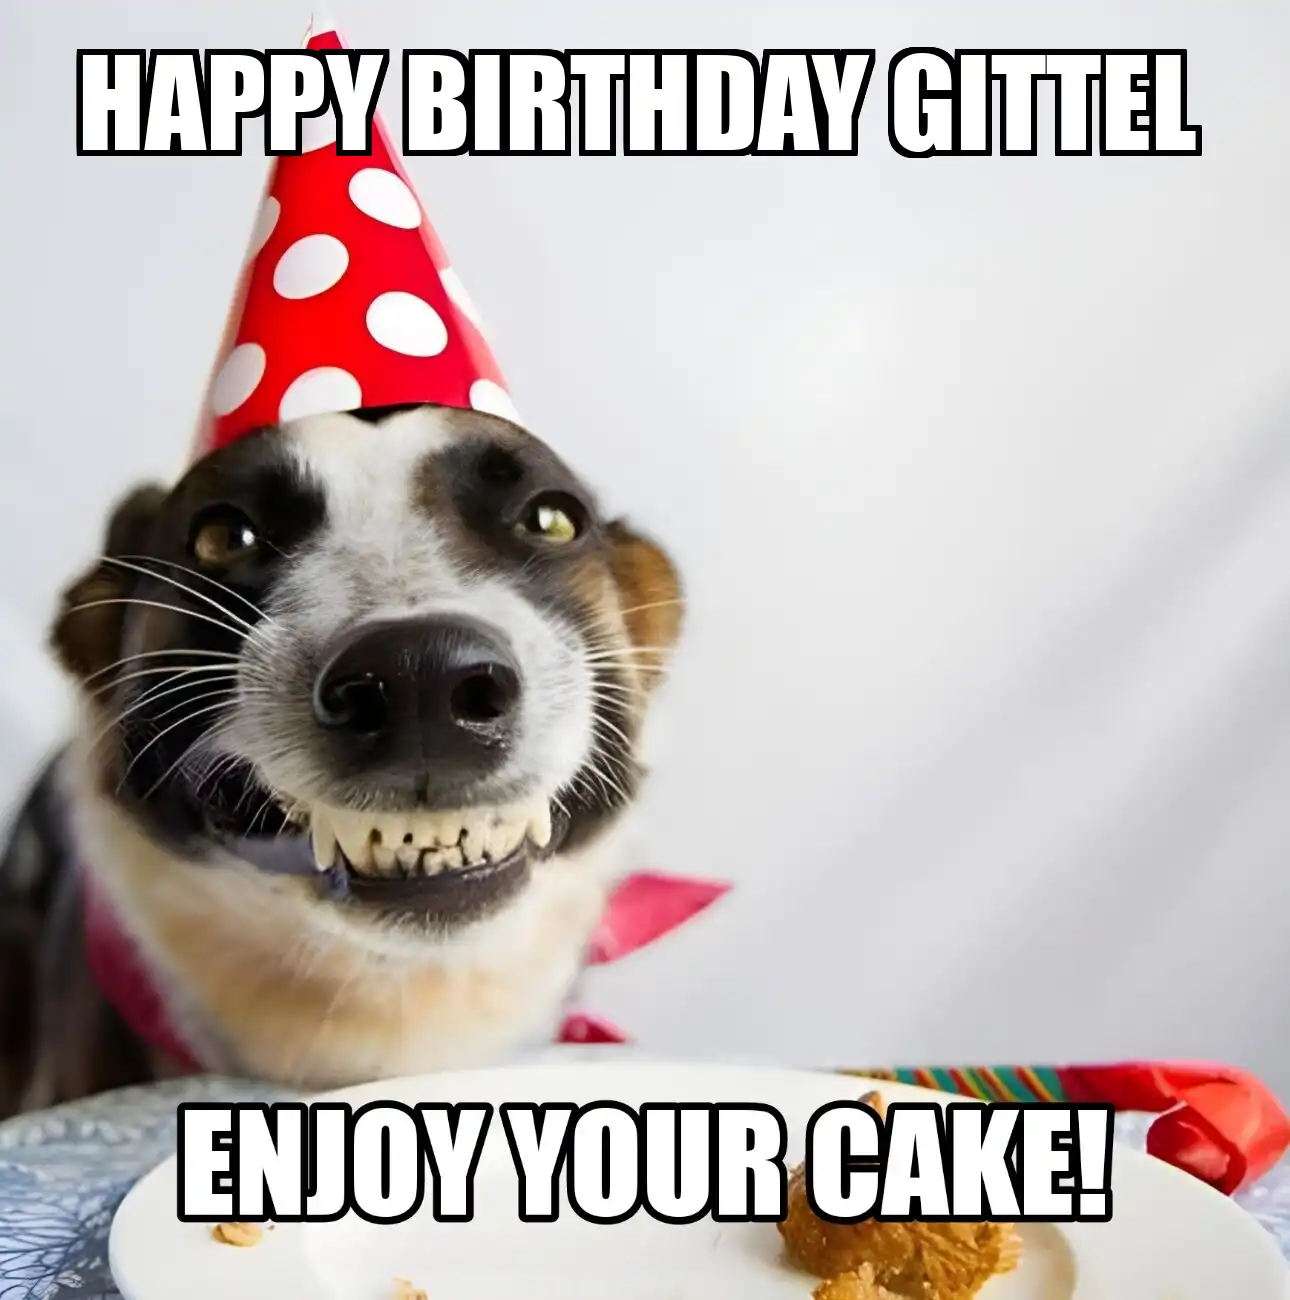 Happy Birthday Gittel Enjoy Your Cake Dog Meme